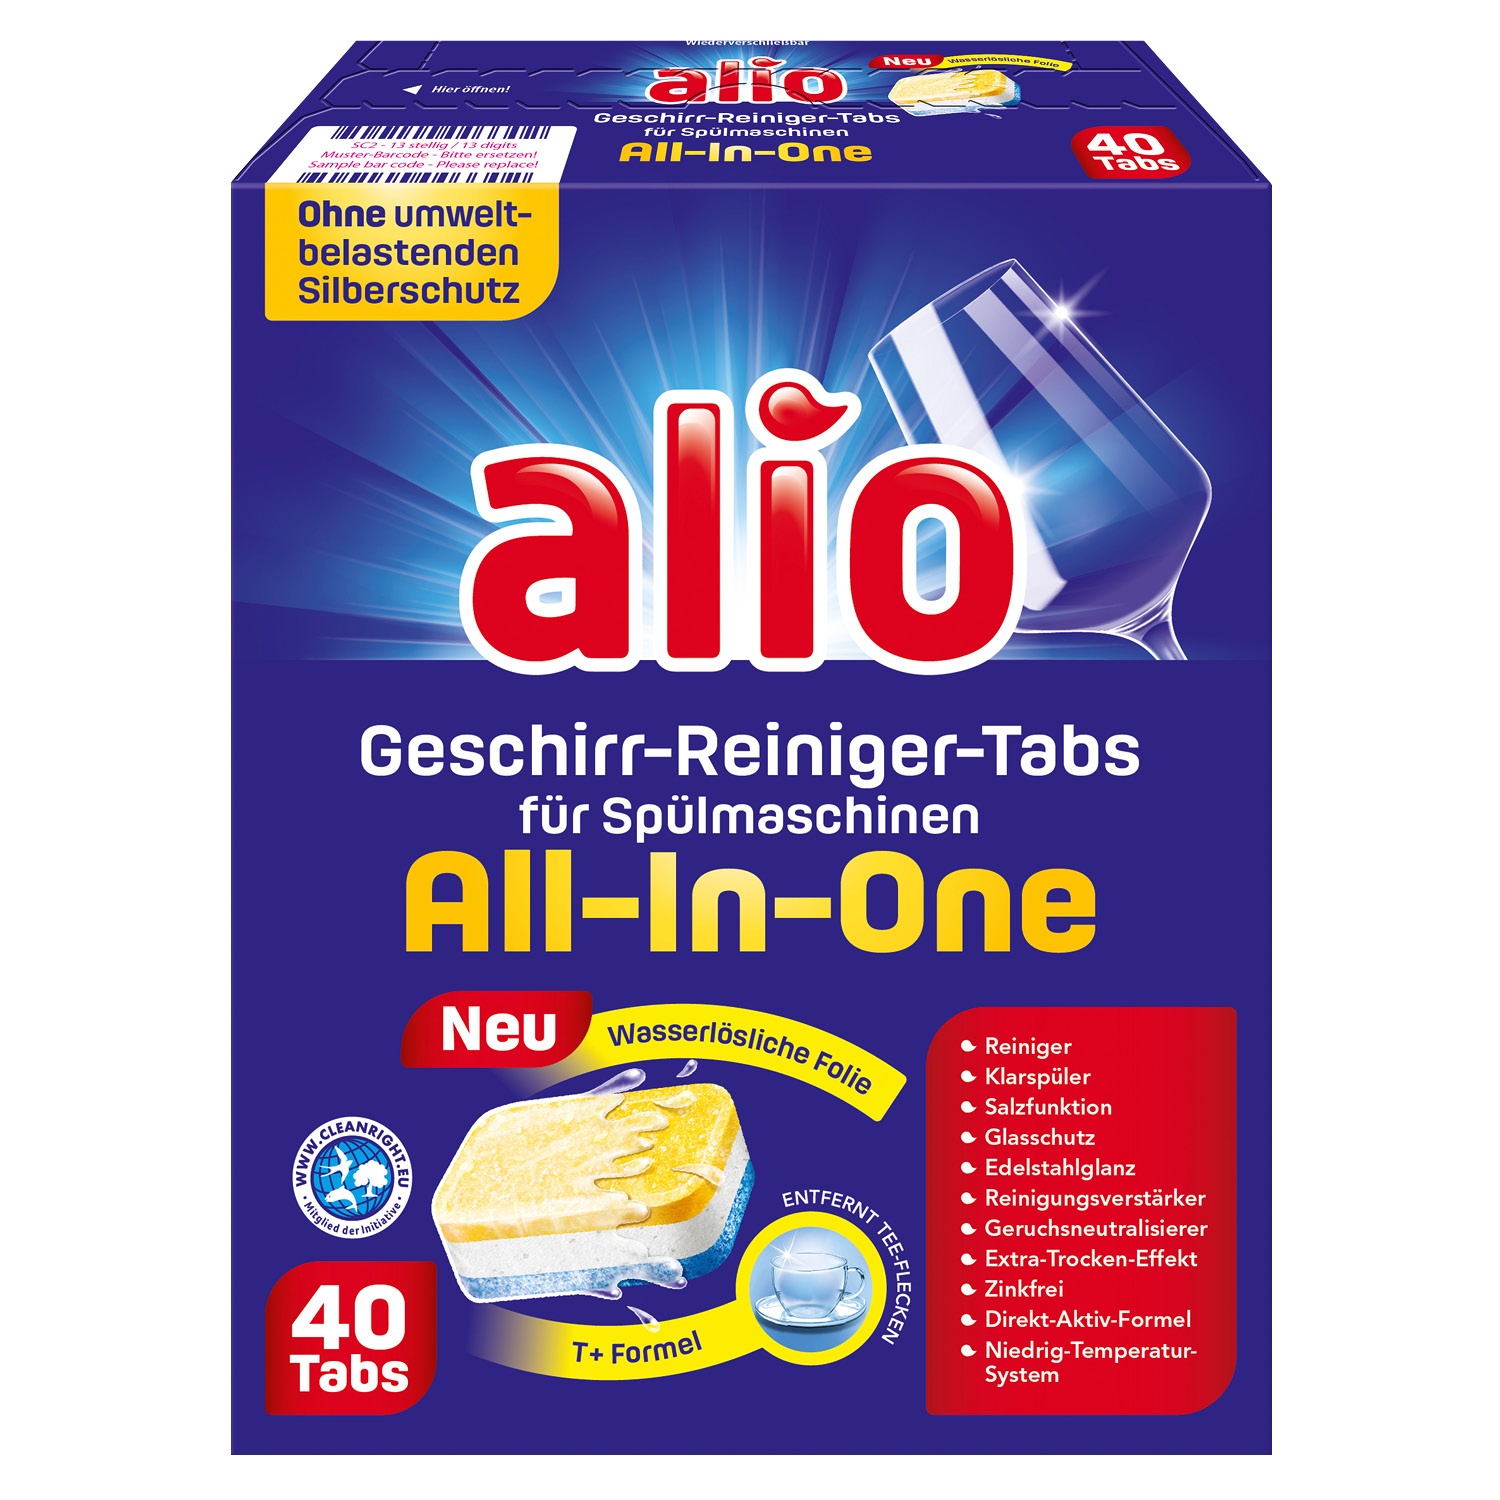 ALIO Geschirr-Reiniger-Tabs für Spülmaschinen alio complete 40 Tabs